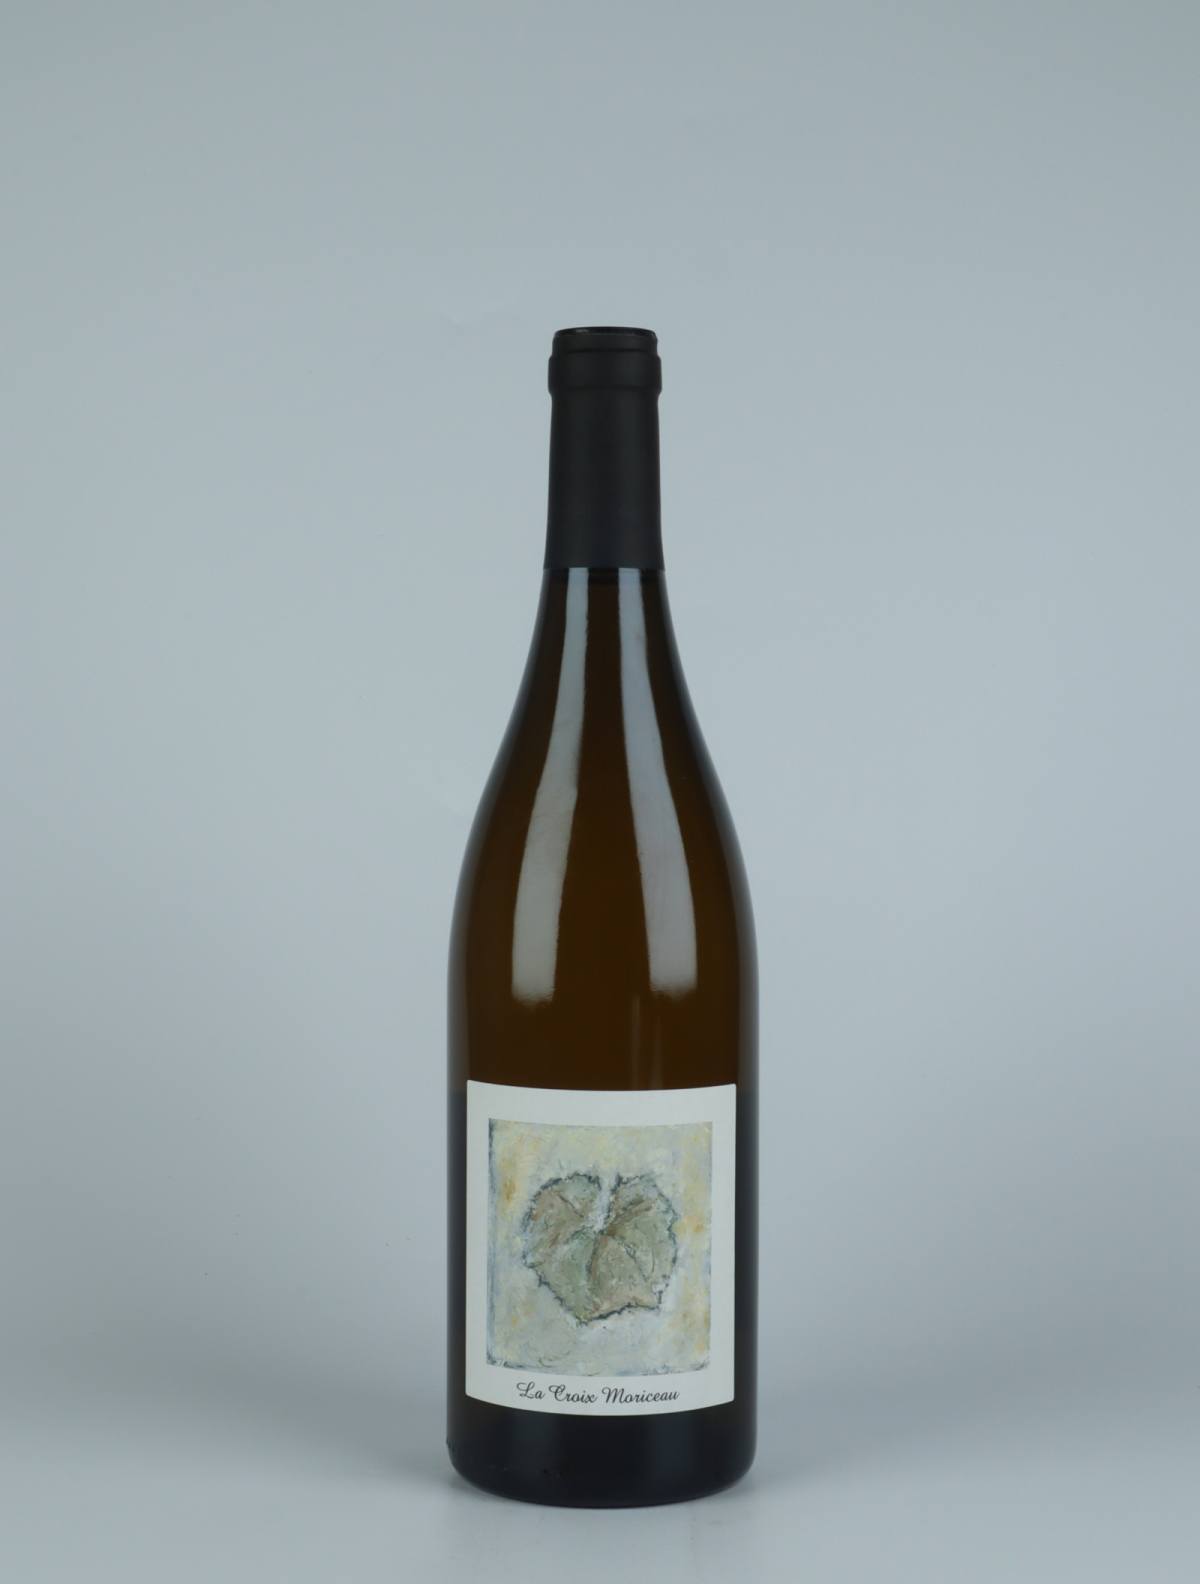 A bottle 2021 La Croix Moriceau White wine from Complémen'terre, Loire in France